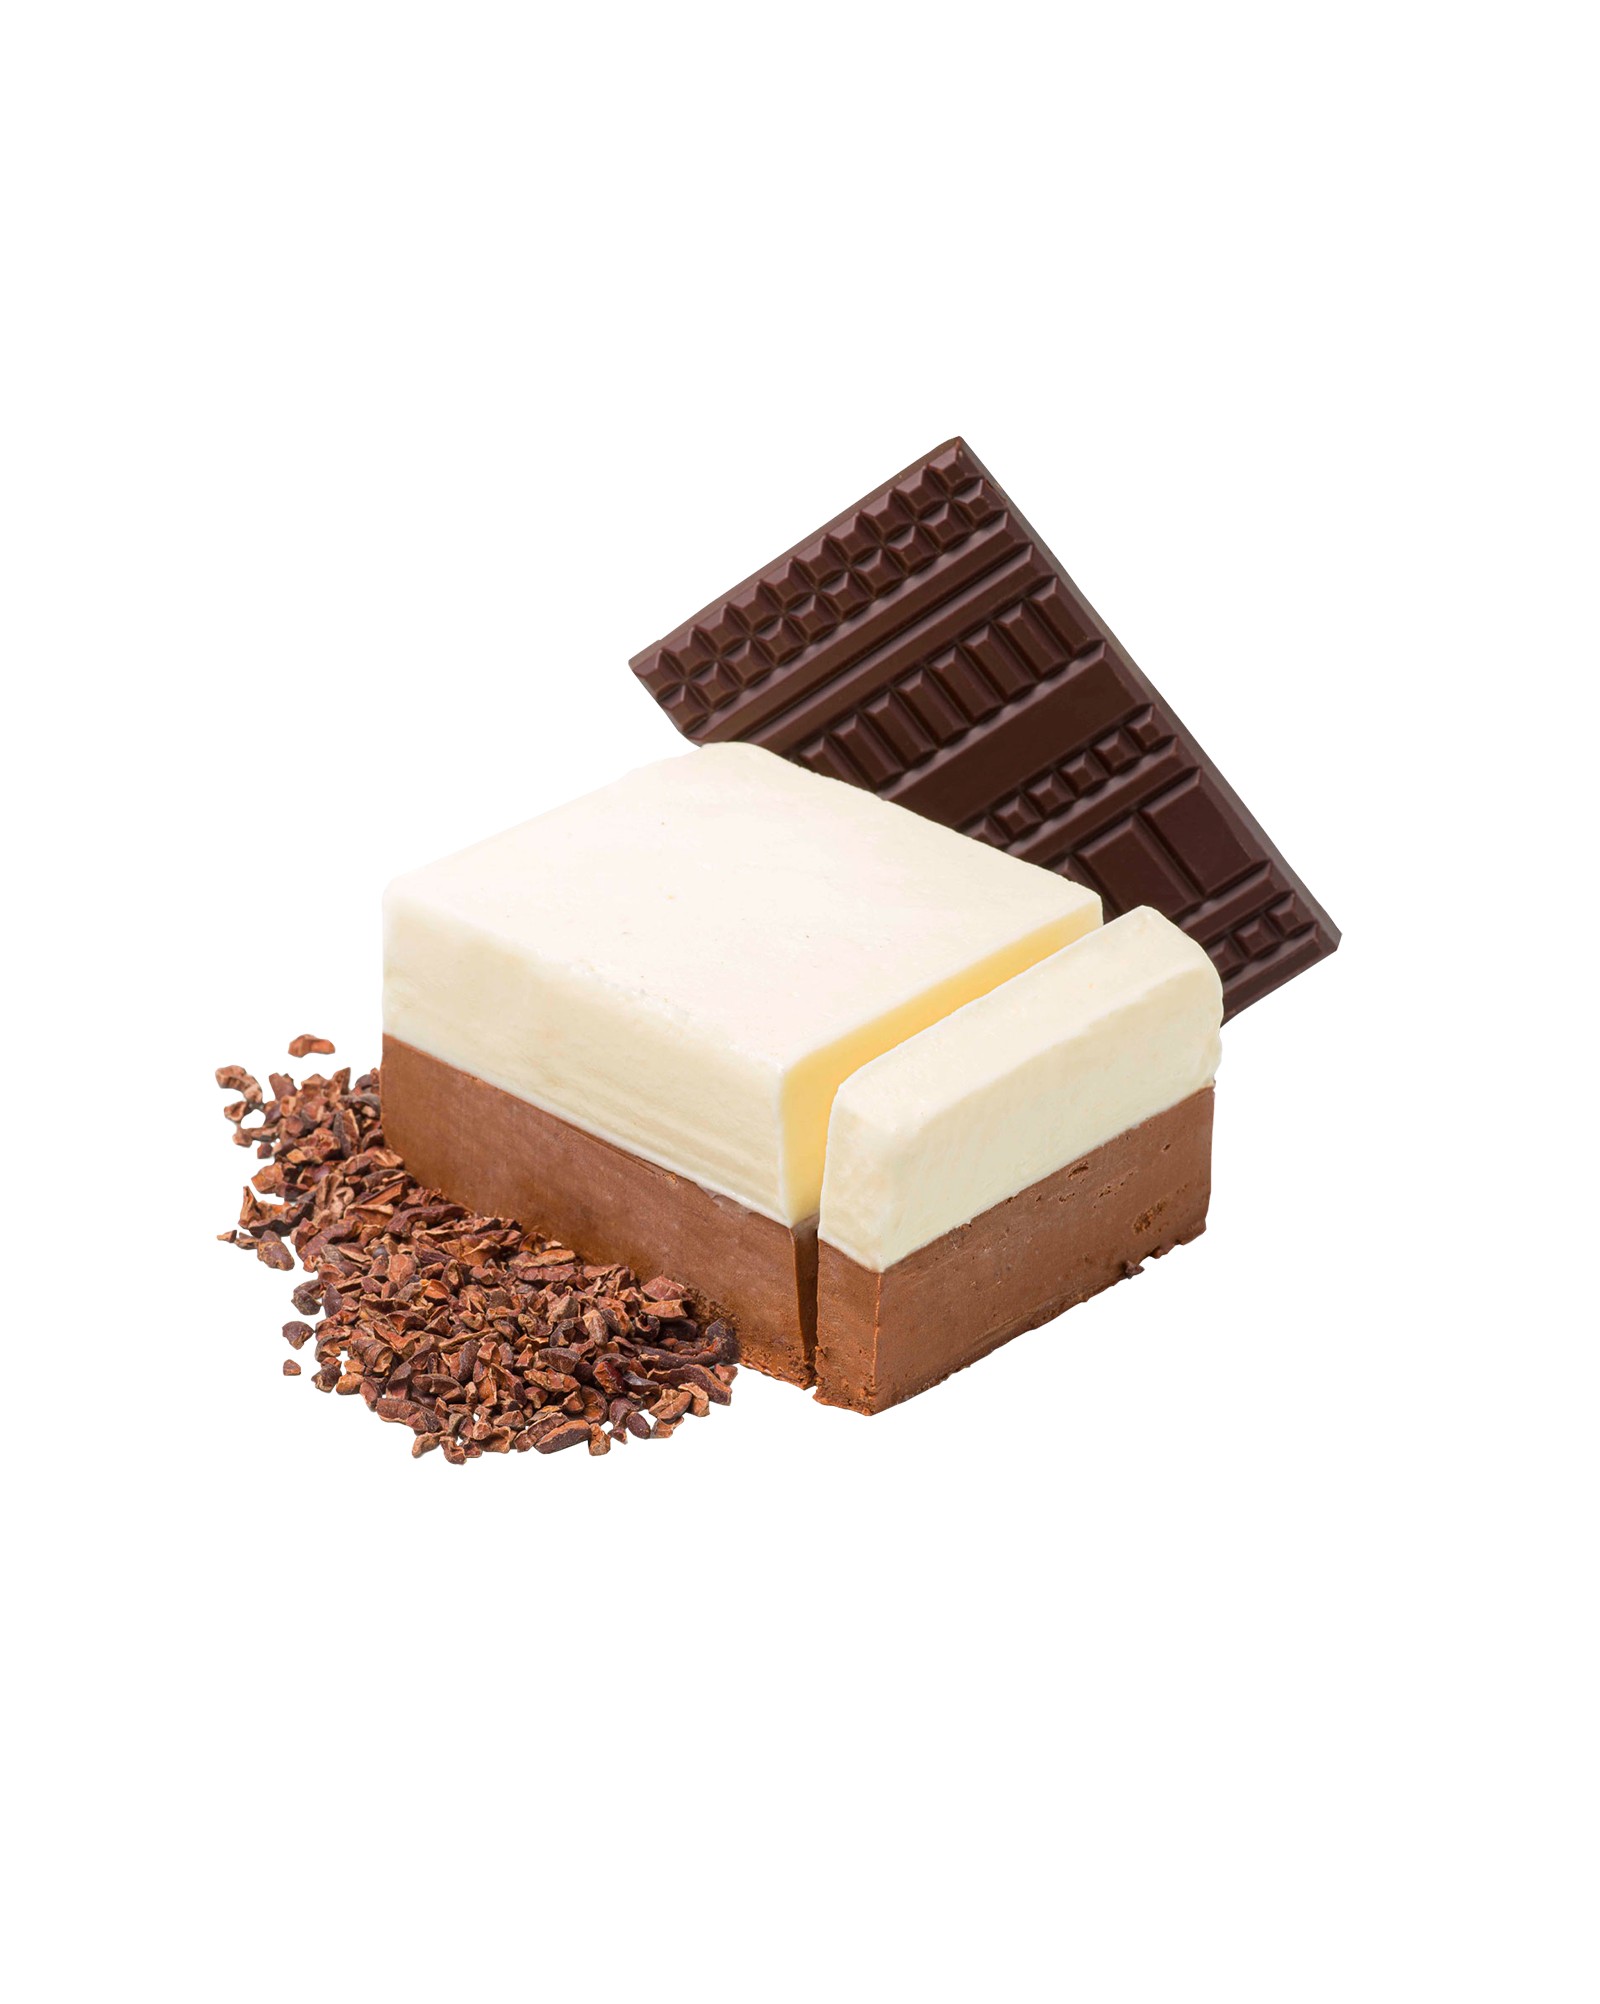 Peru Chocolate – Fior di latte